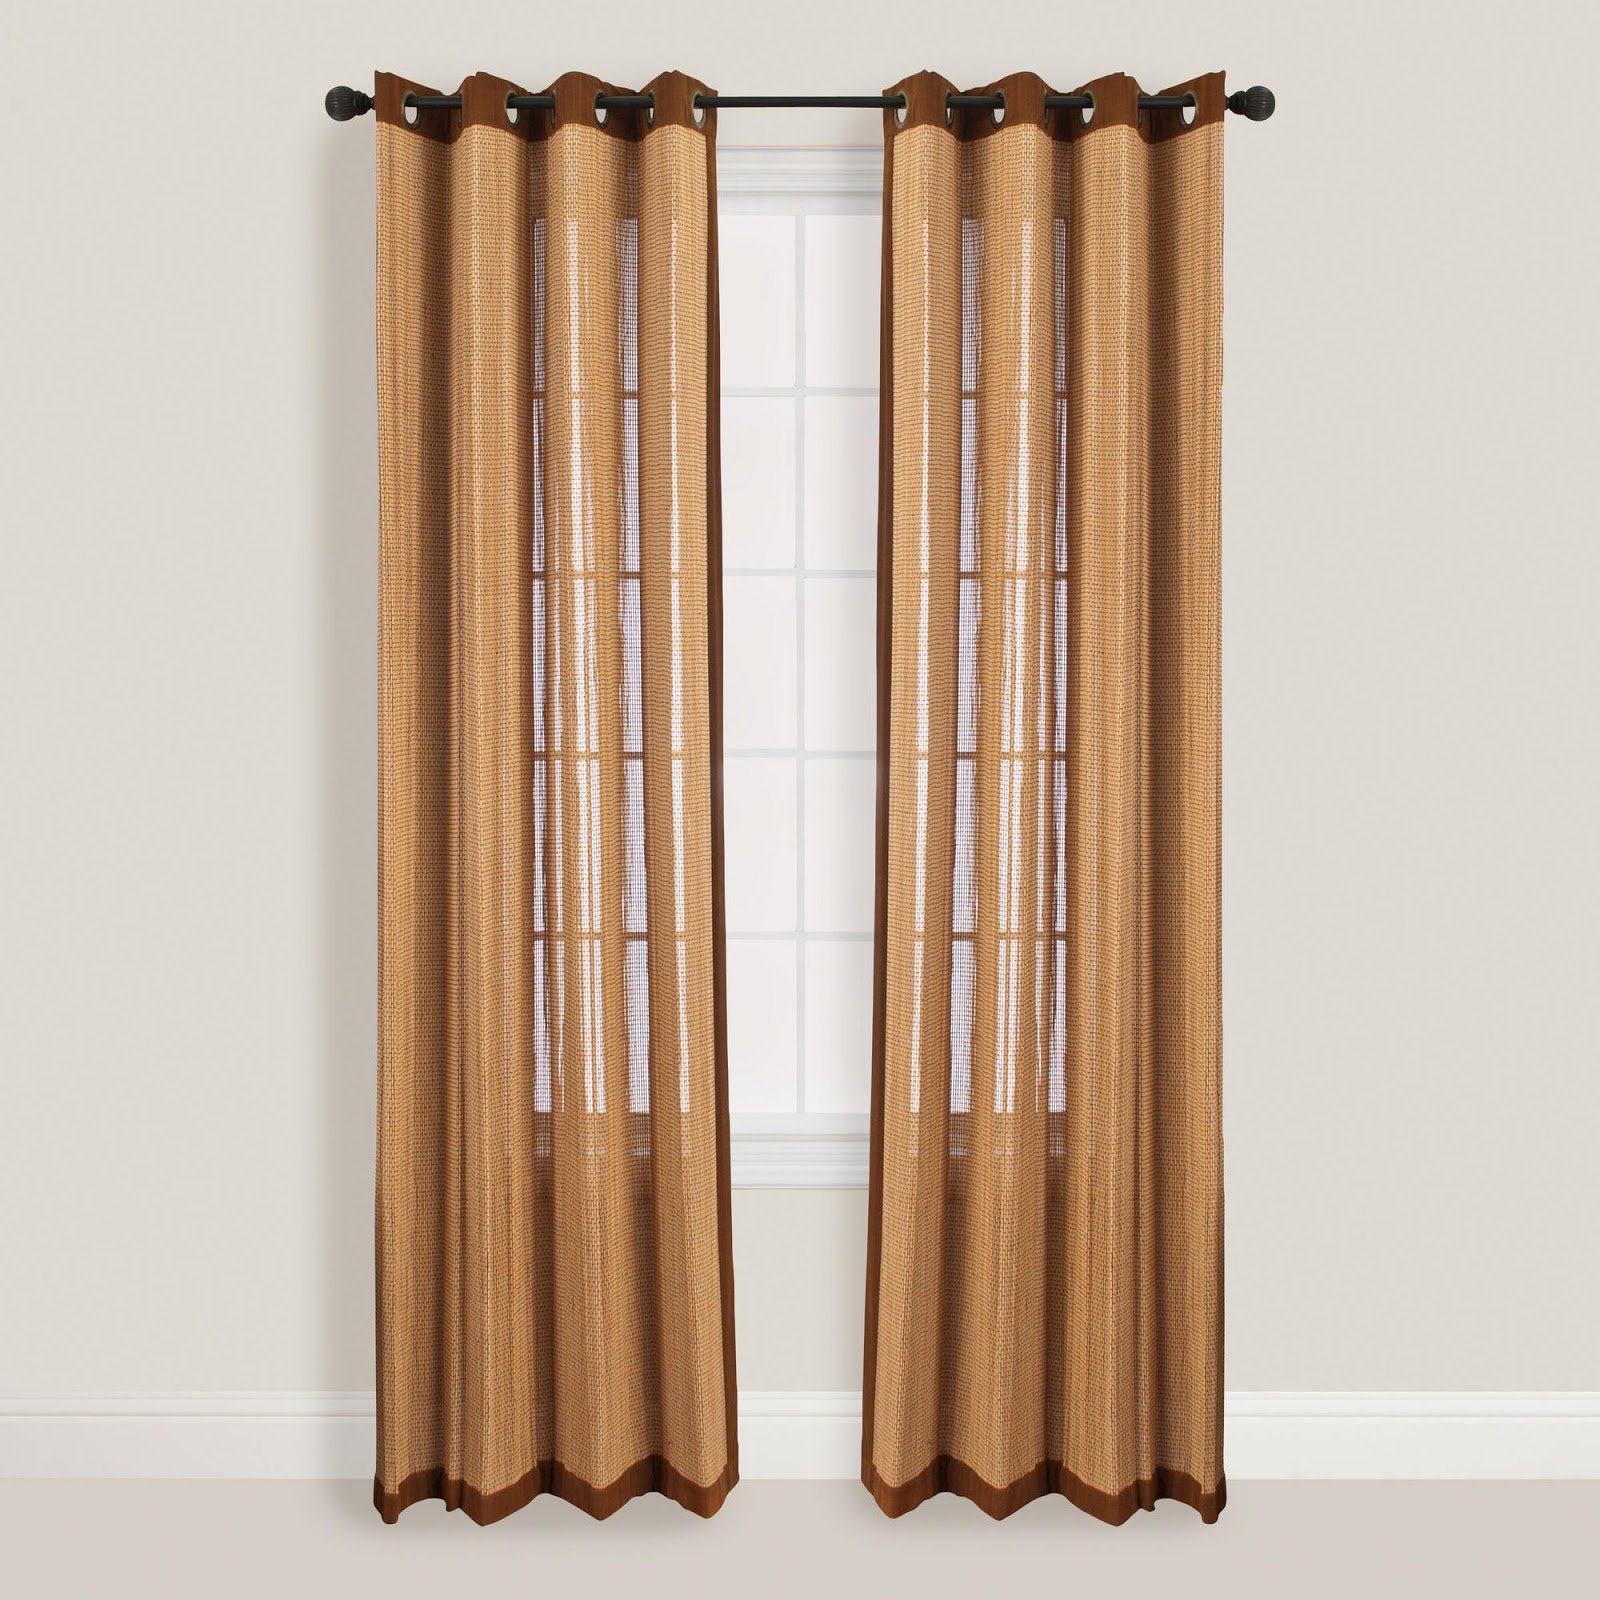 Дверные бамбуковые шторы купить. Бамбуковая занавеска на дверь. Шторы из бамбука. Бамбуковые шторы на дверной проем. Шторы гармошкой.